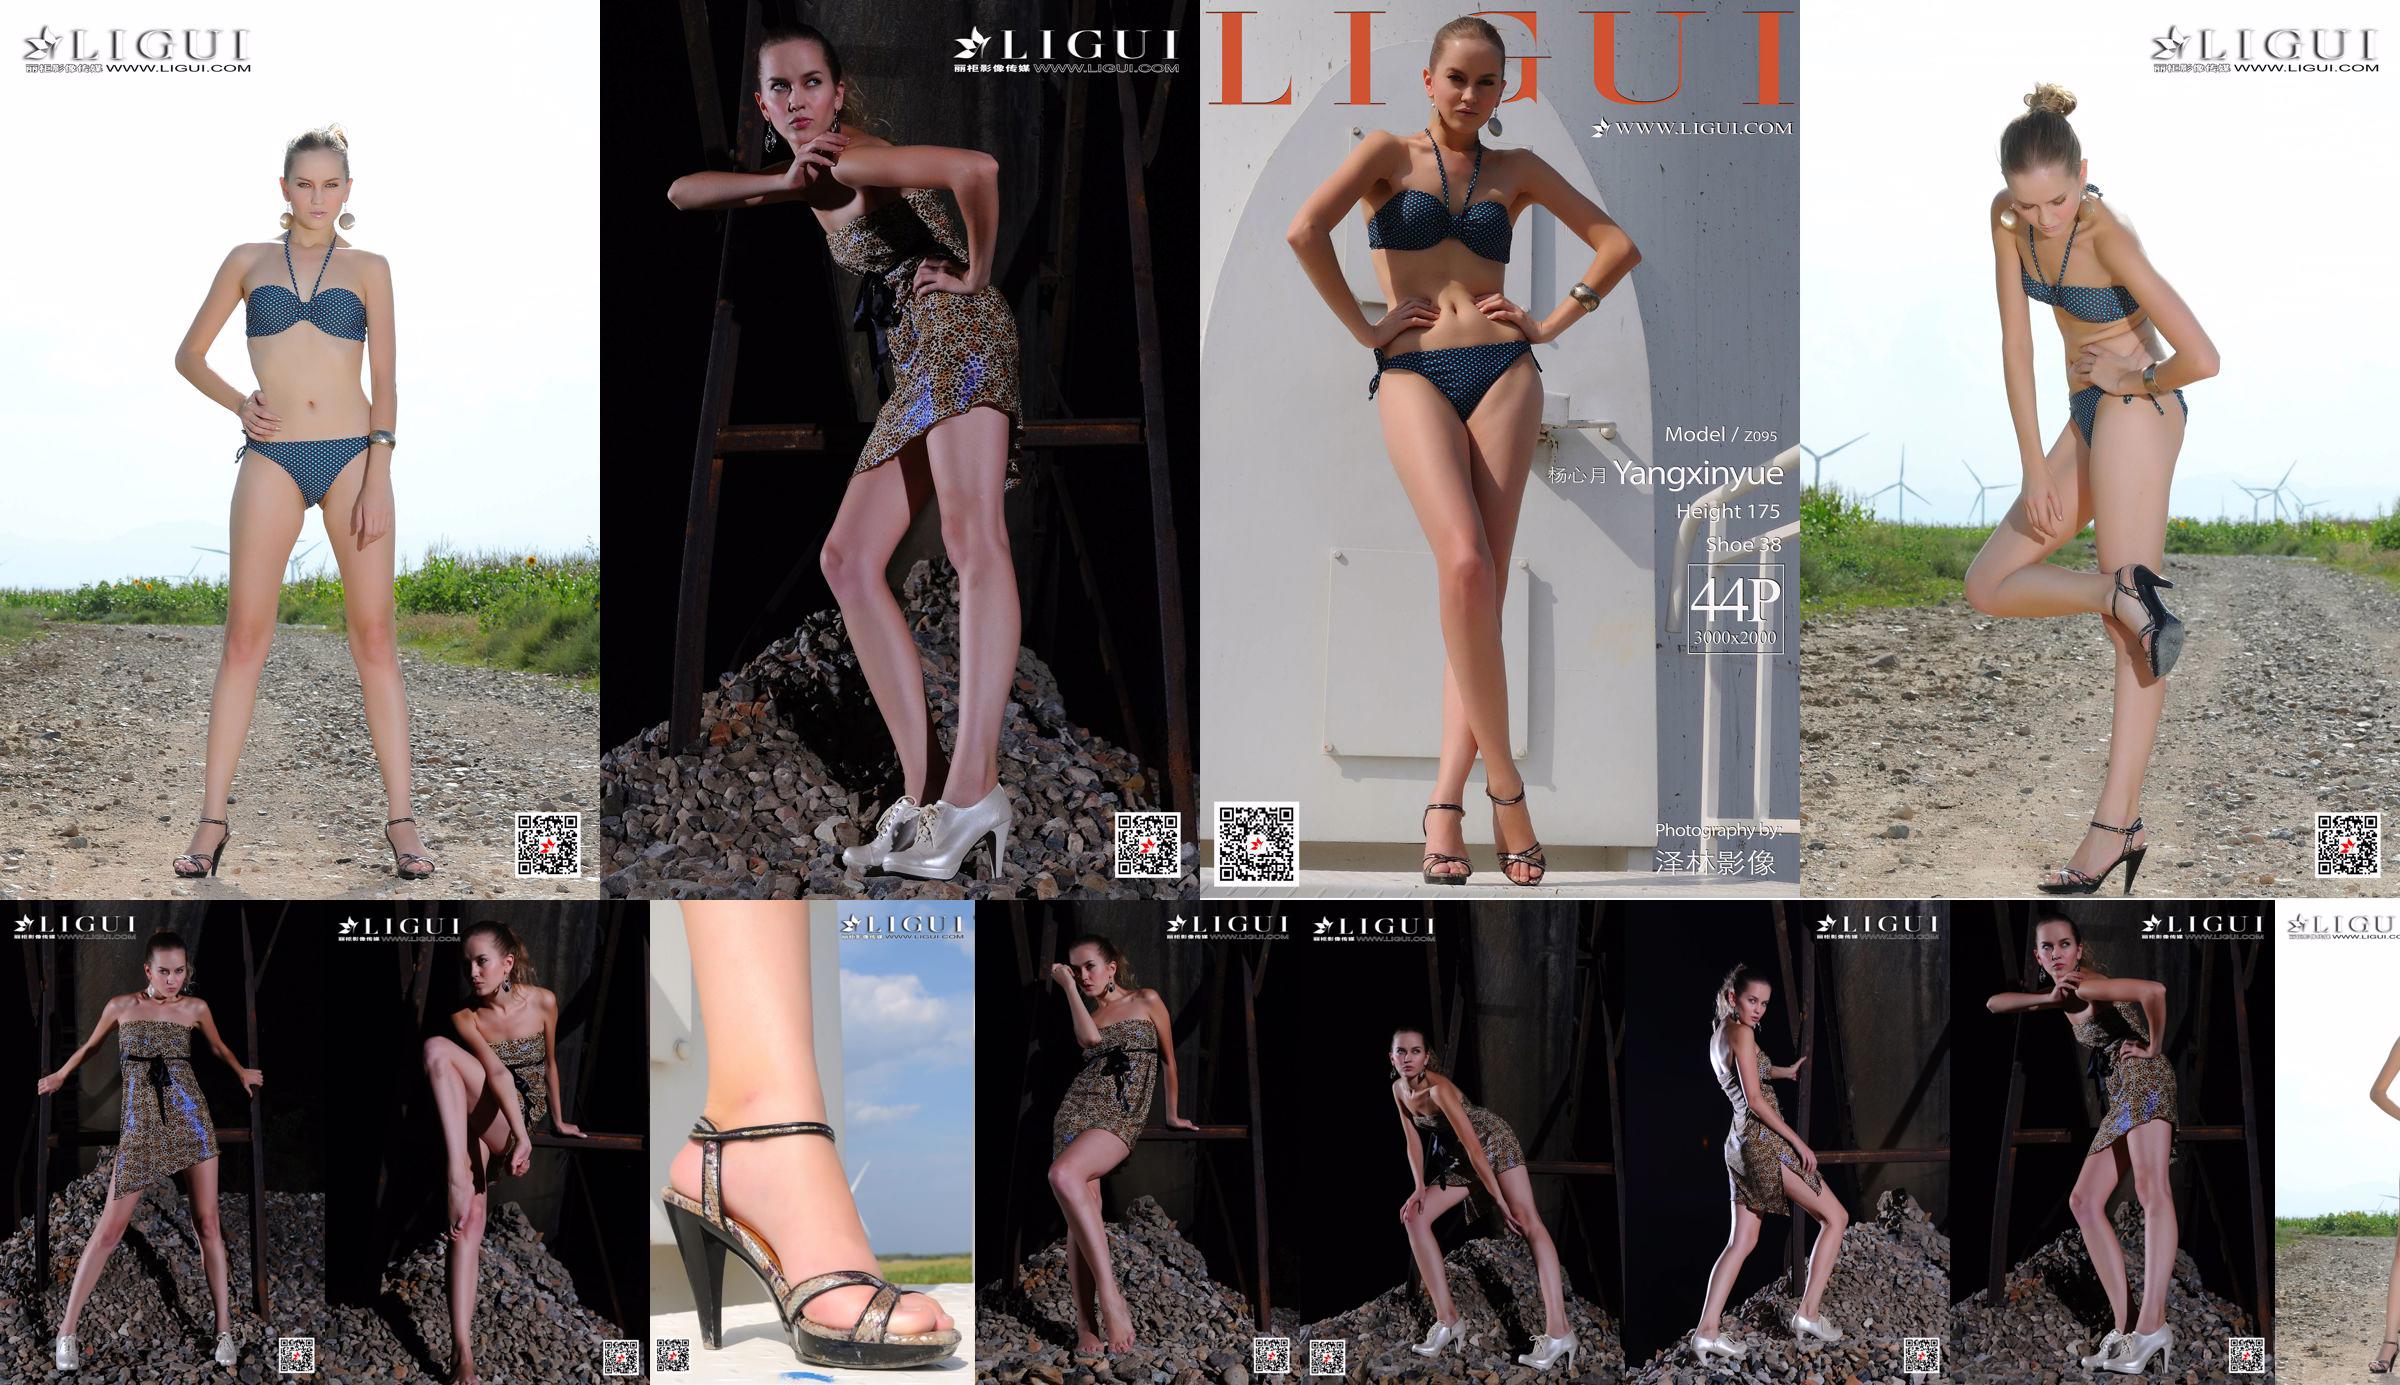 [丽 柜 Ligui] Model Yang Xinyue "Bikini" No.7dc733 Seite 5